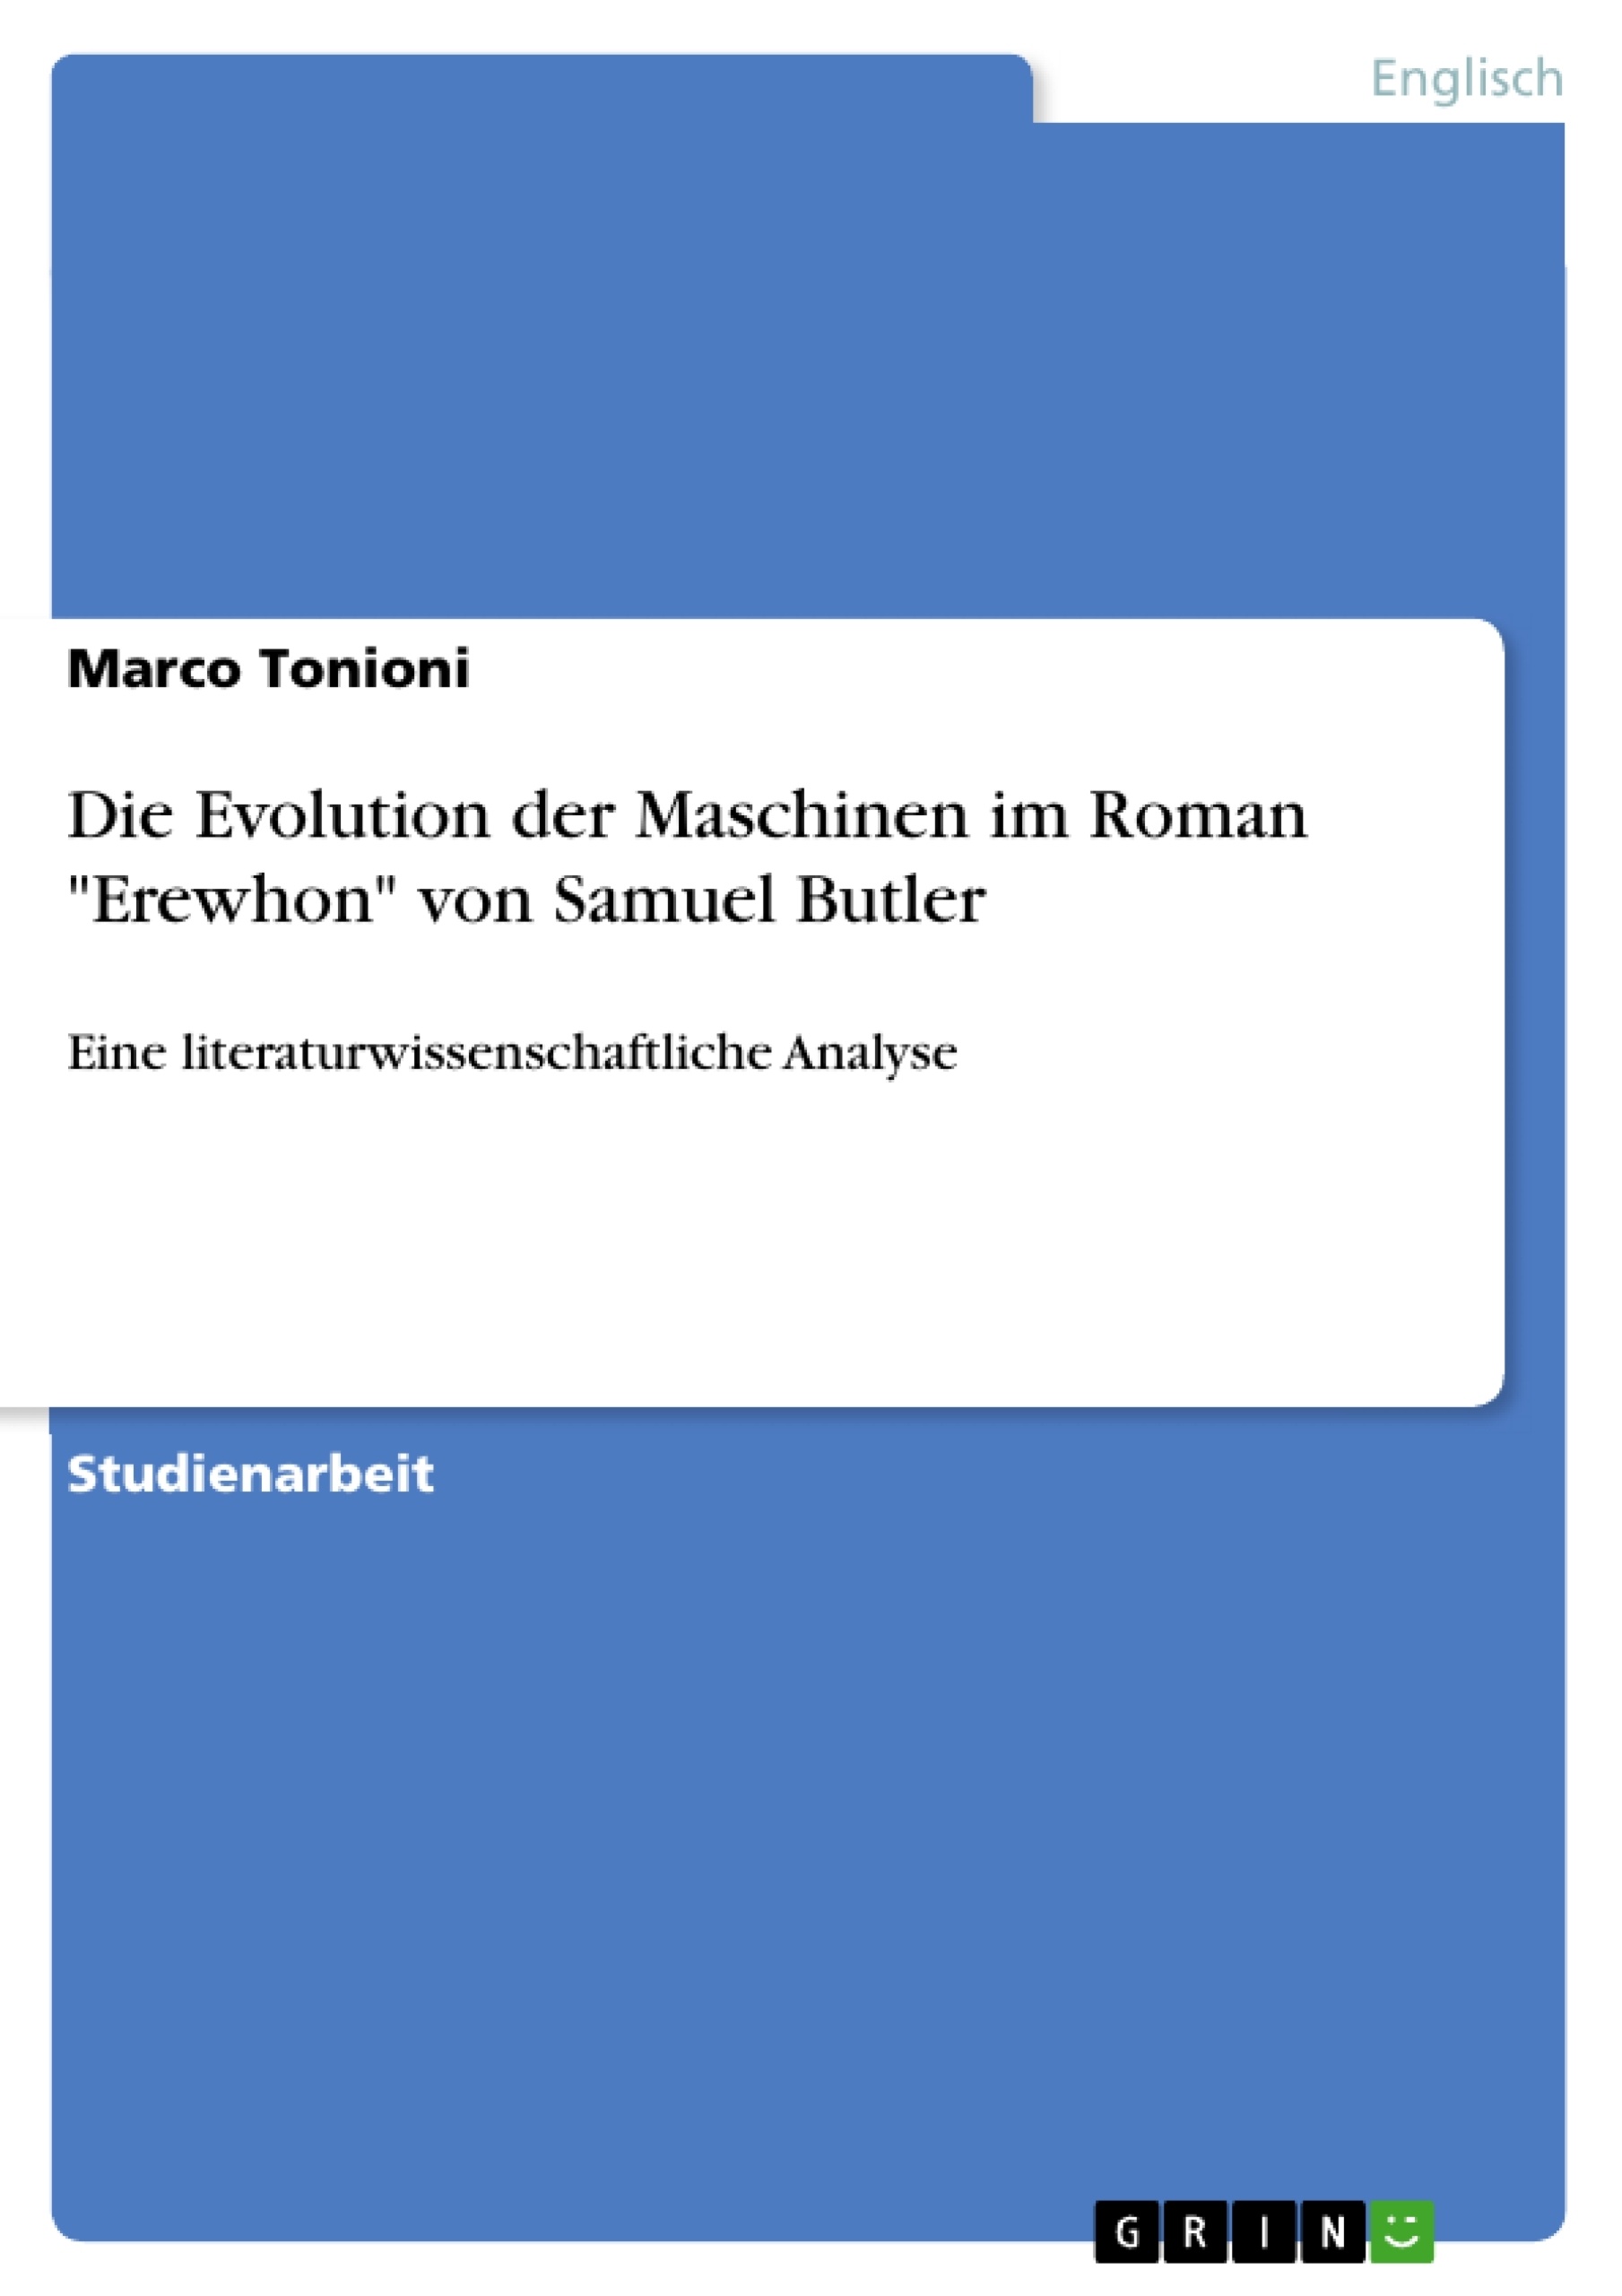 Título: Die Evolution der Maschinen im Roman "Erewhon" von Samuel Butler